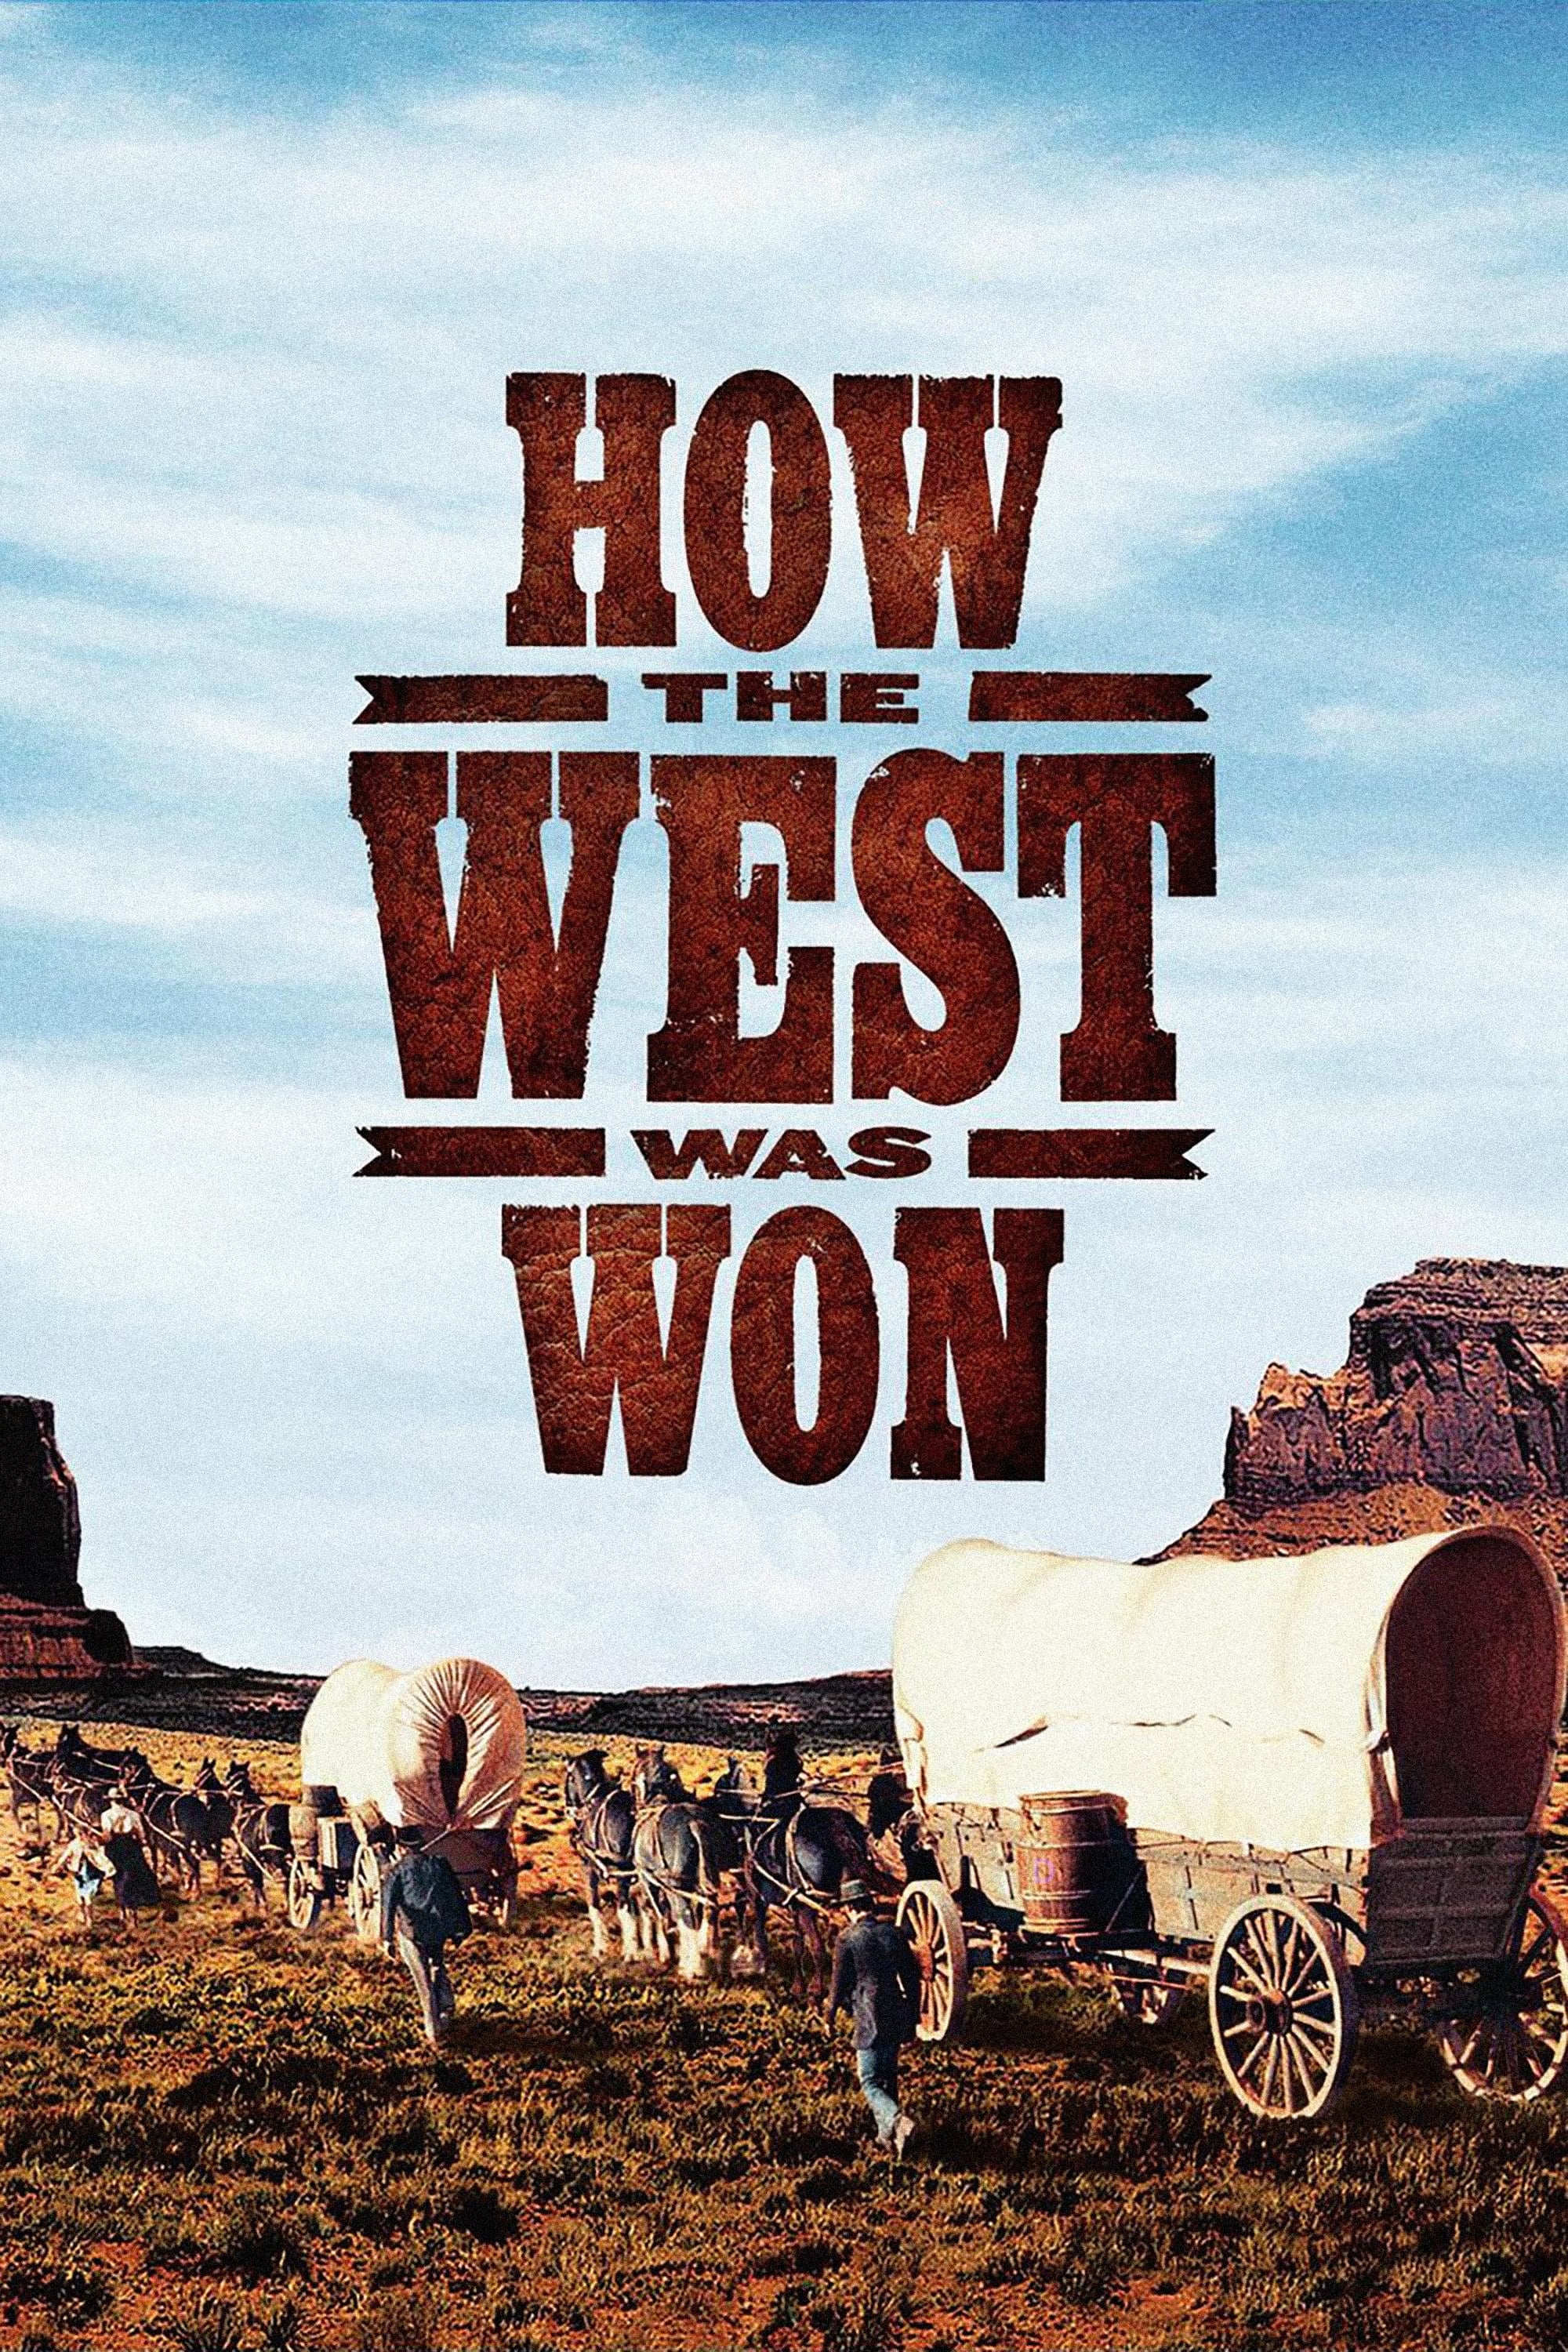 Das war der Wilde Westen